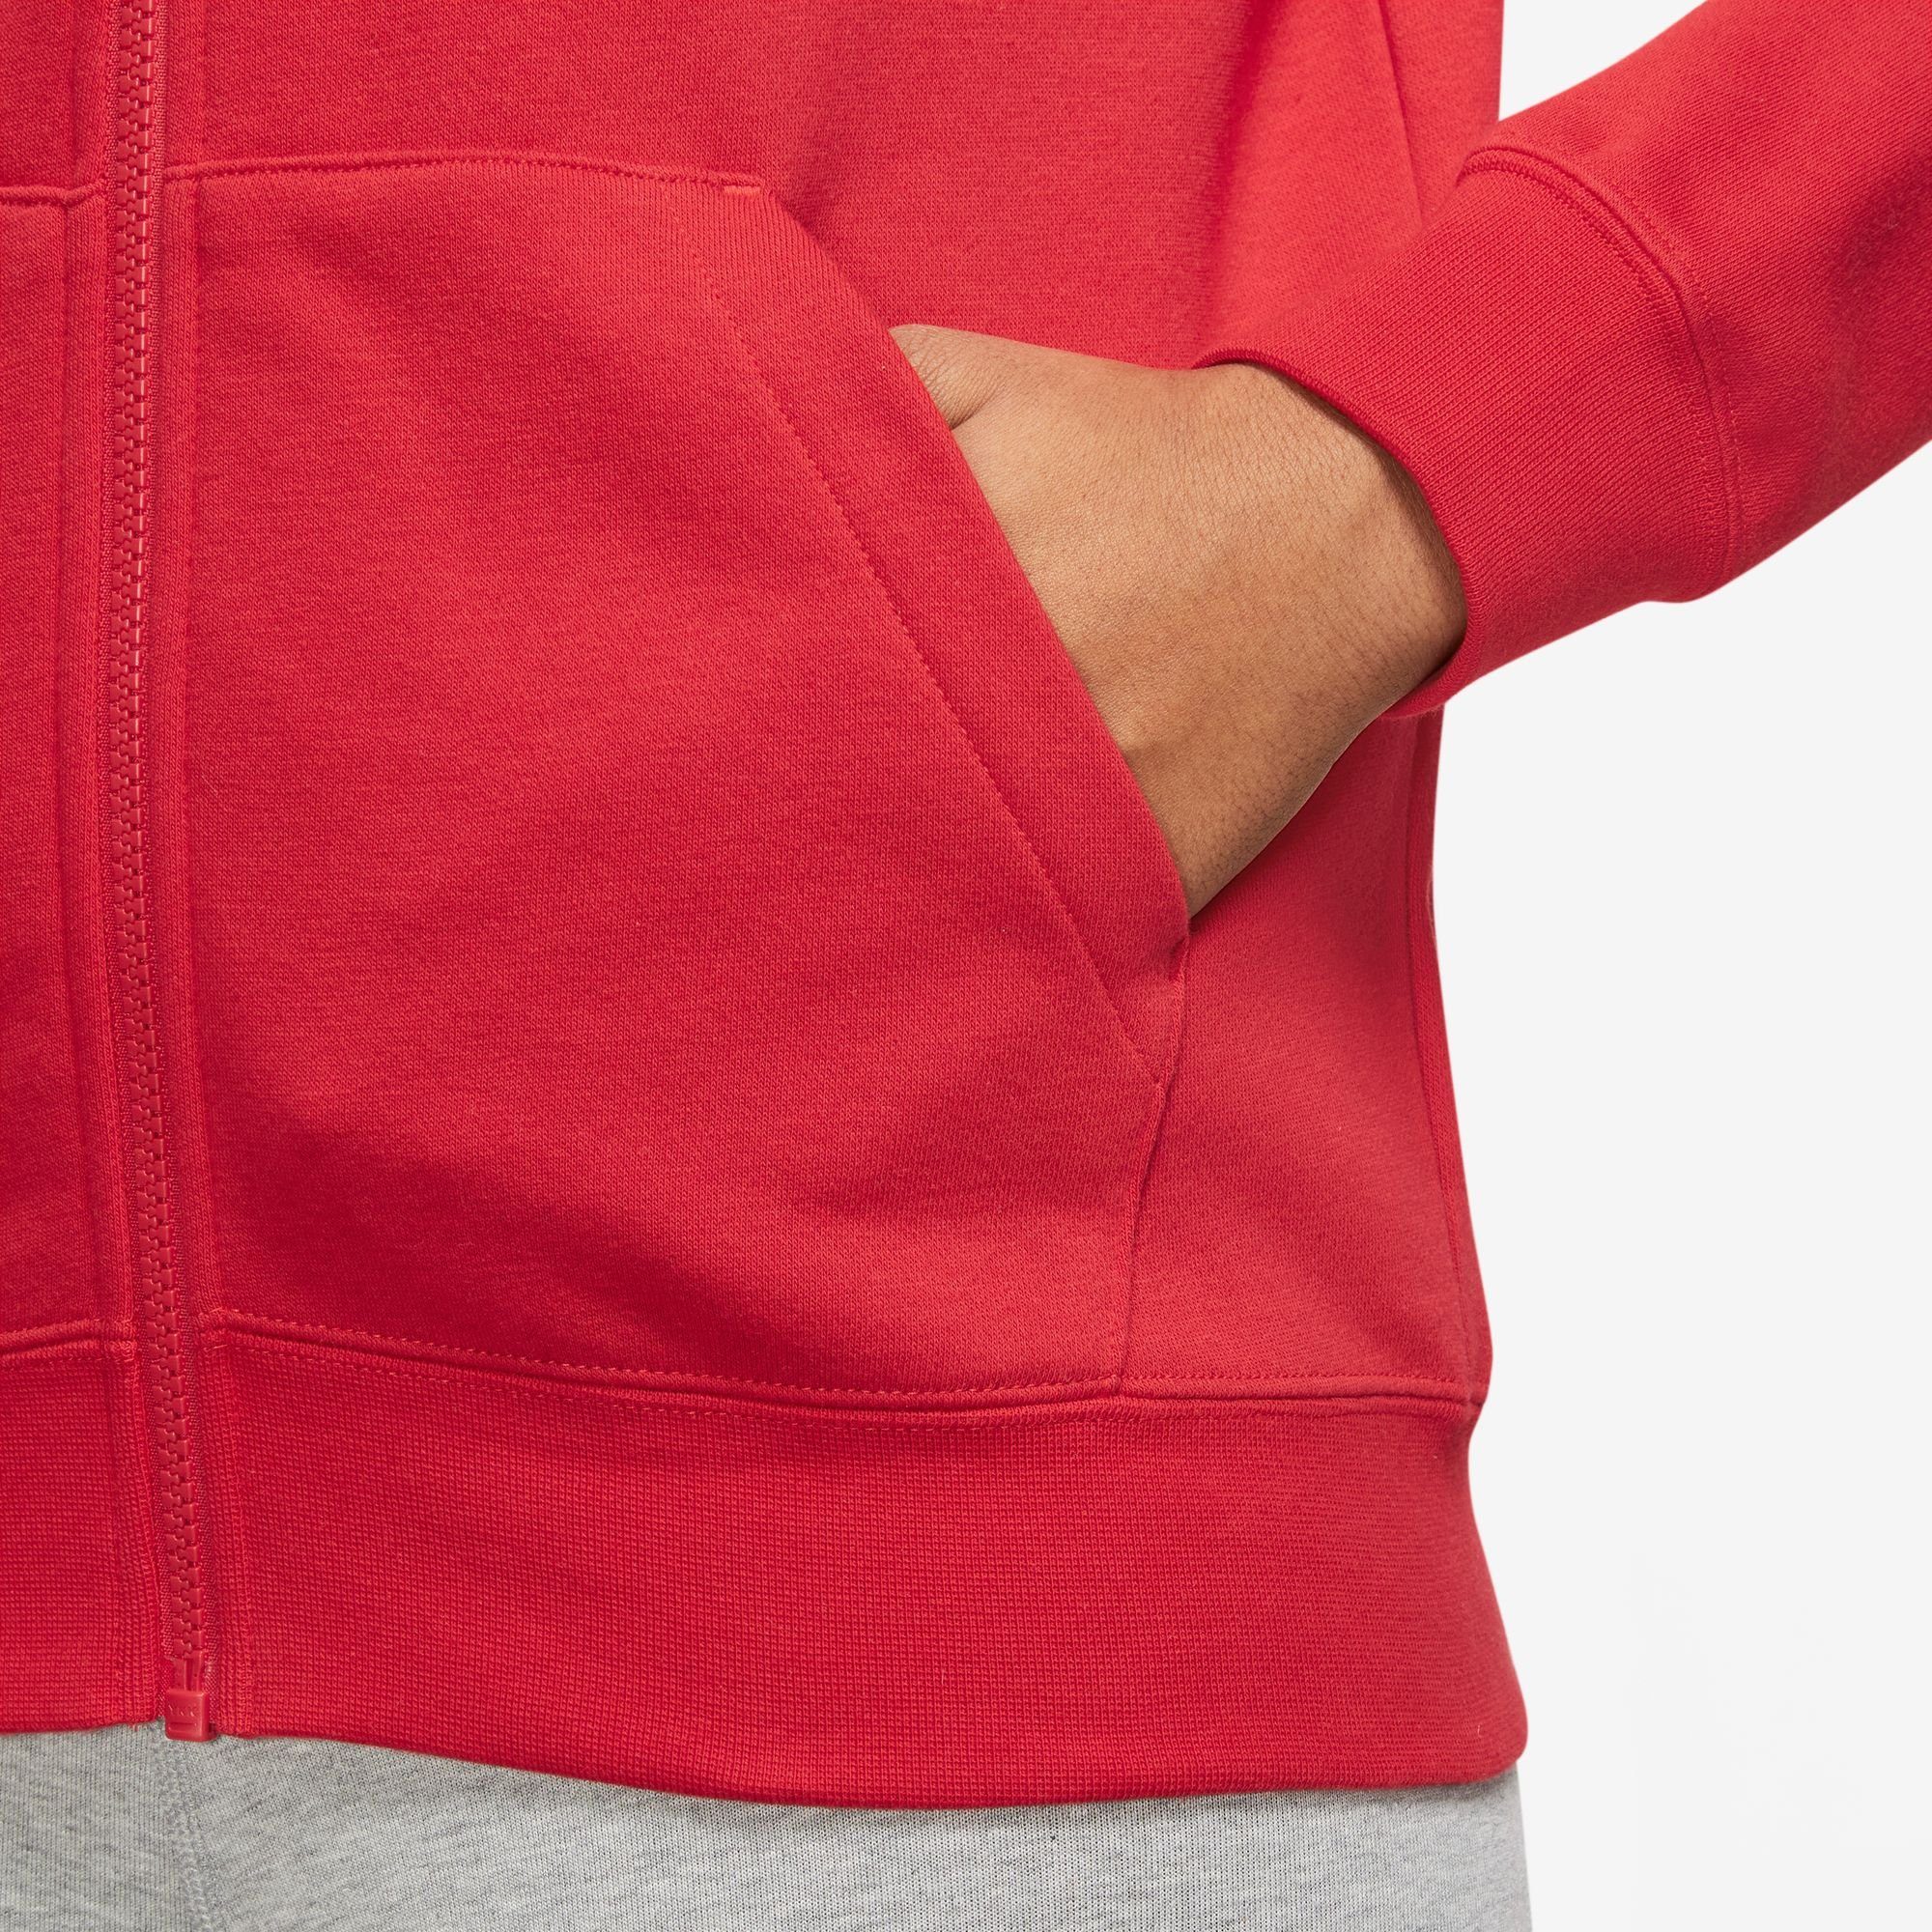 Hoodie Full-Zip RED/WHITE Fleece UNIVERSITY Kapuzensweatjacke Nike Club Women's Sportswear